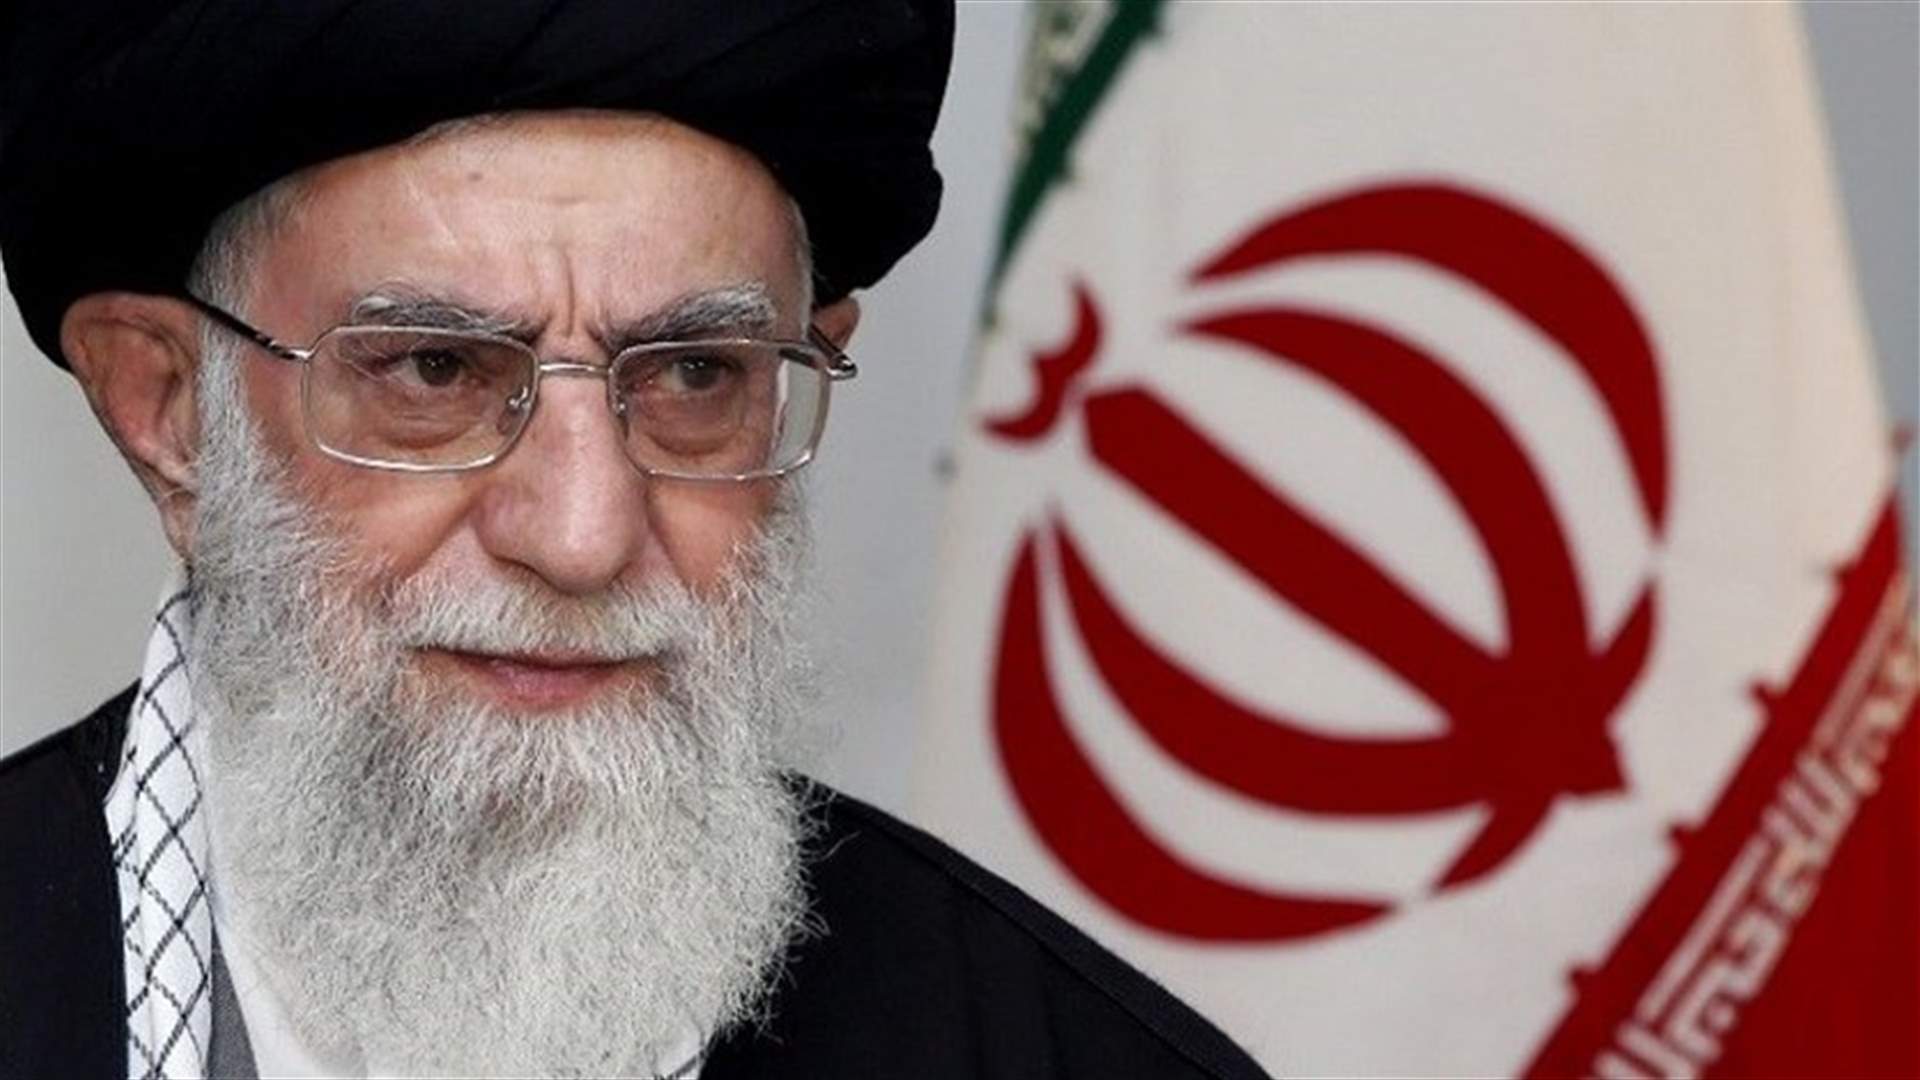 خامنئي: طهران أحبطت كل التهديدات الإقليمية ضدها وحولتها إلى فرص